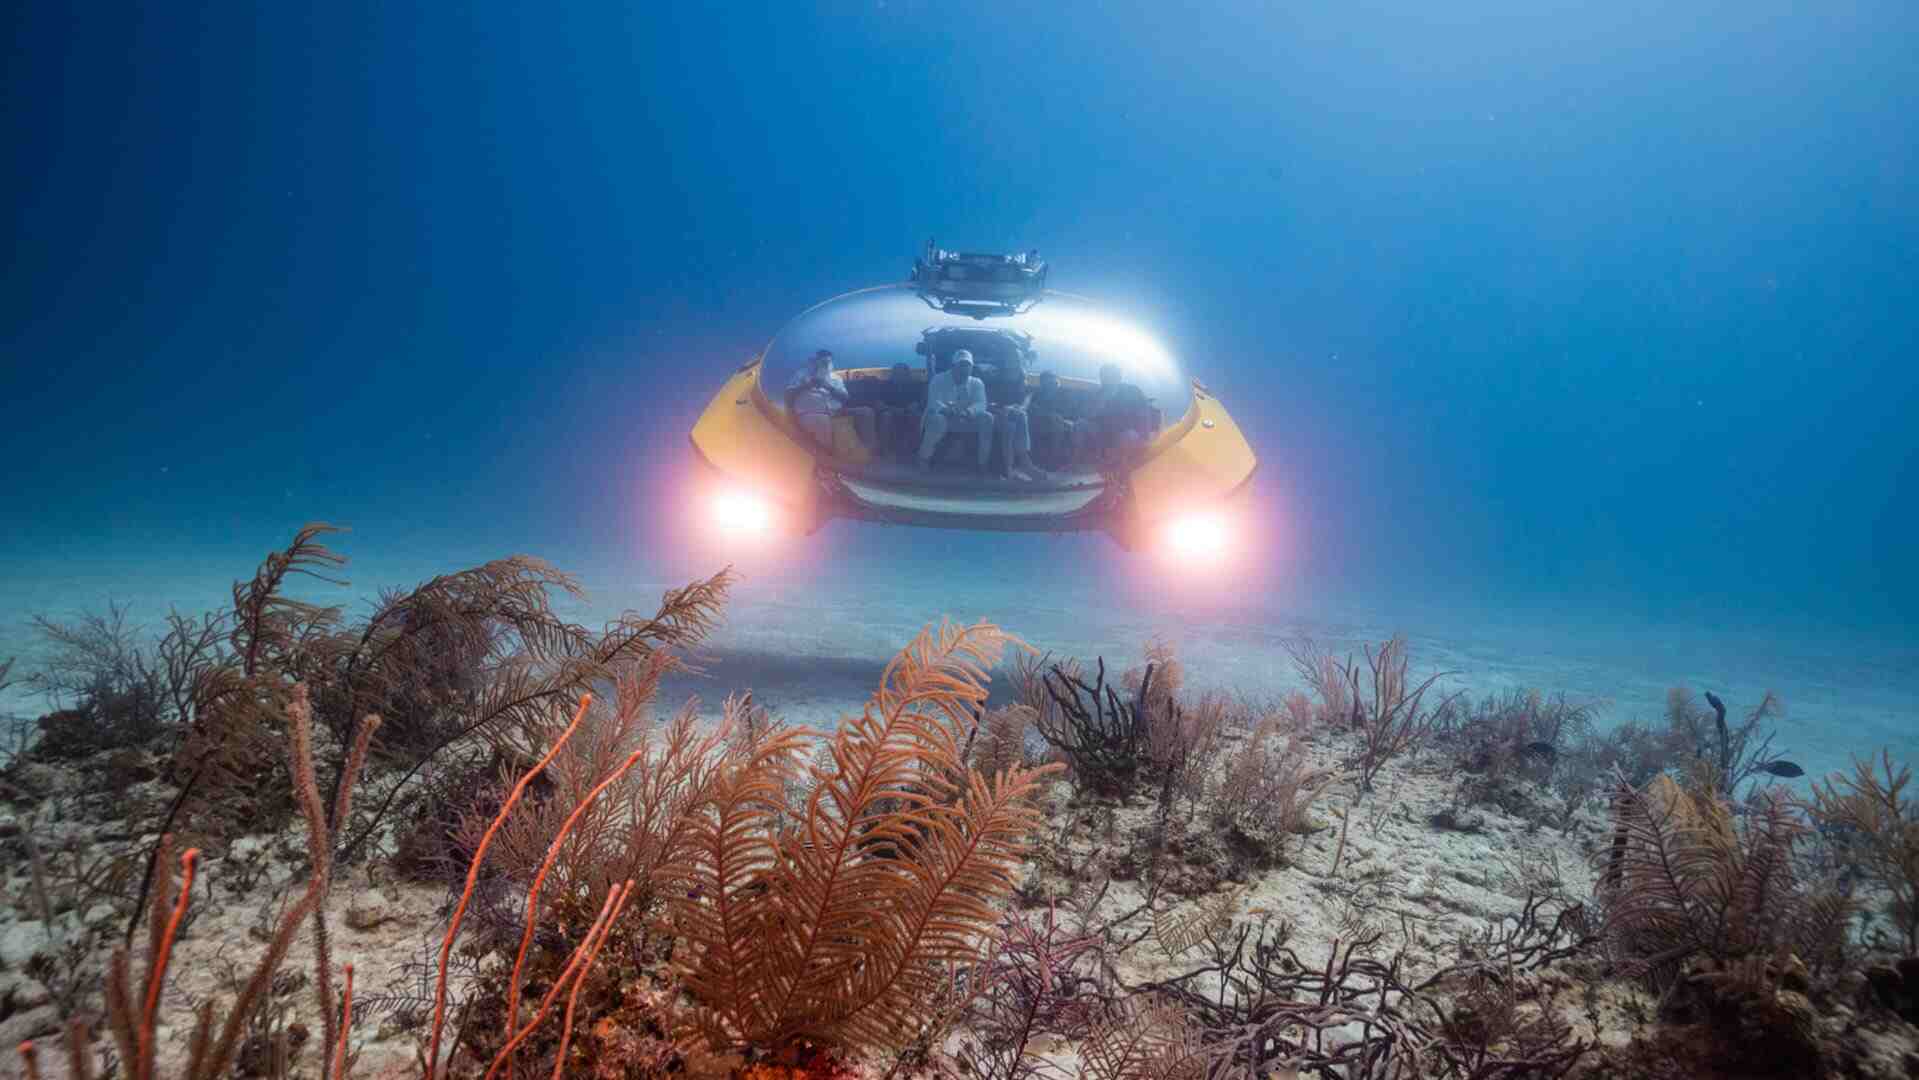 This transparent submarine could revolutionize underwater exploration